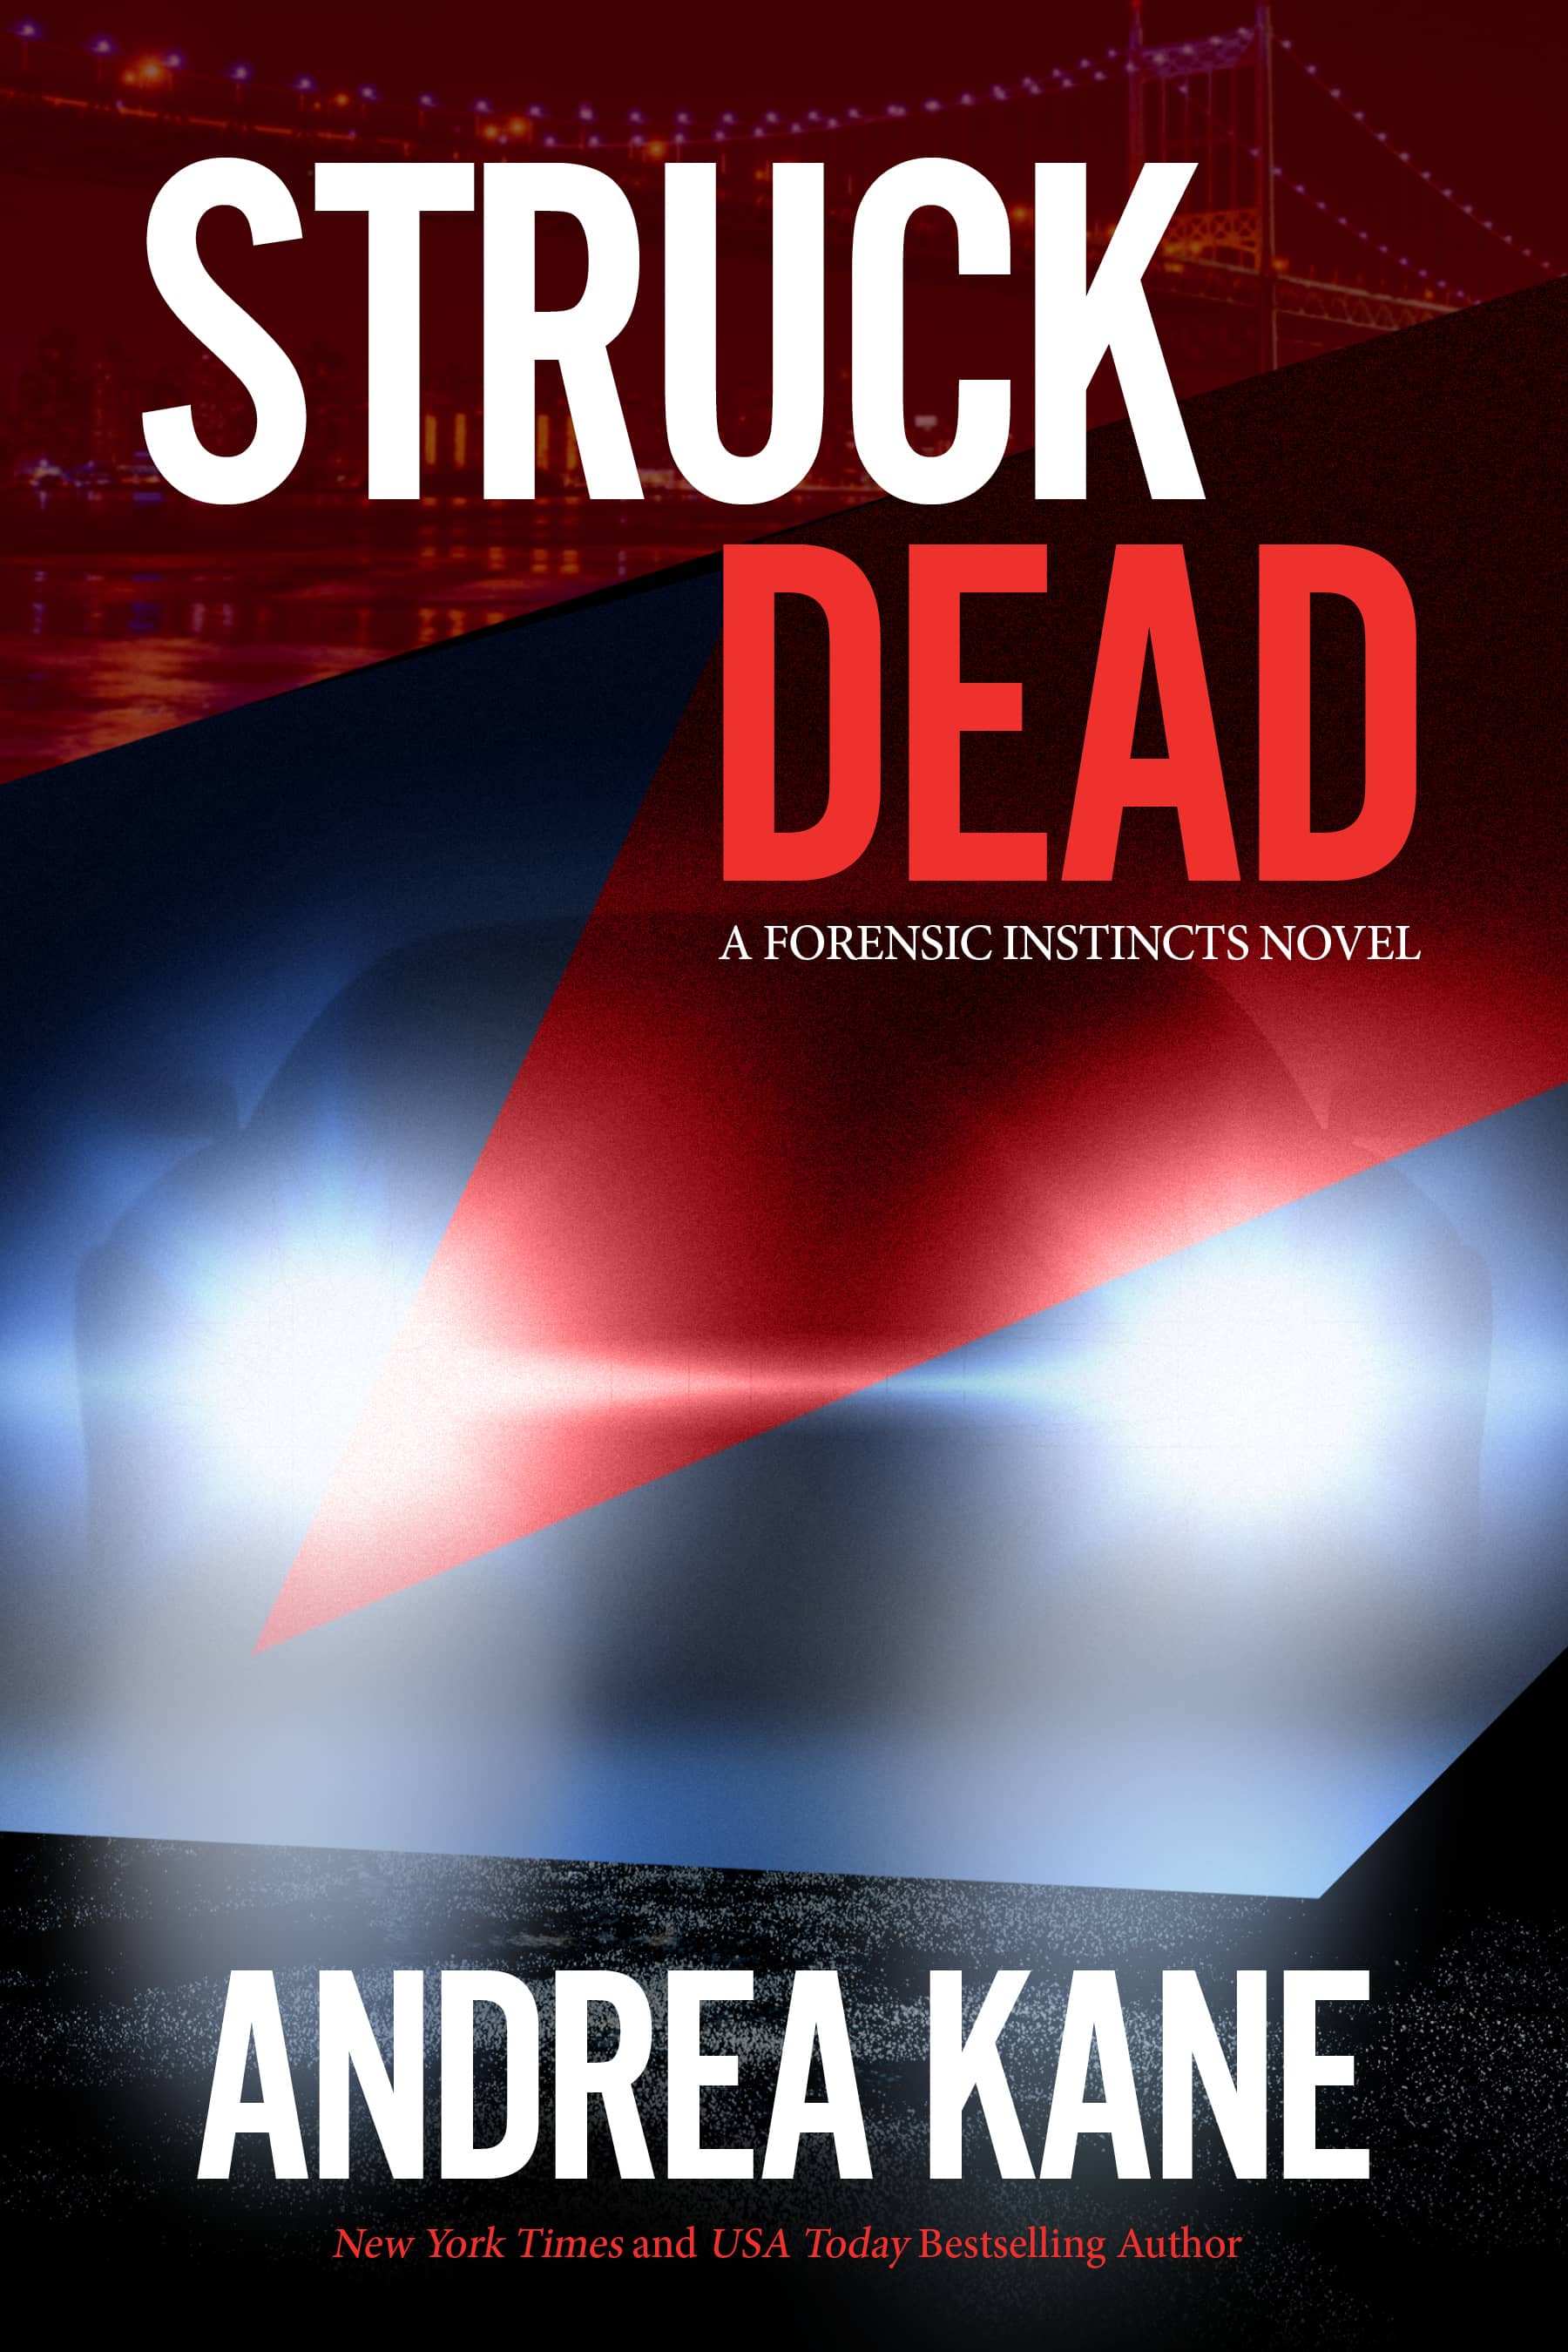 Struck Dead, a Forensic Instincts novel by Andrea Kane